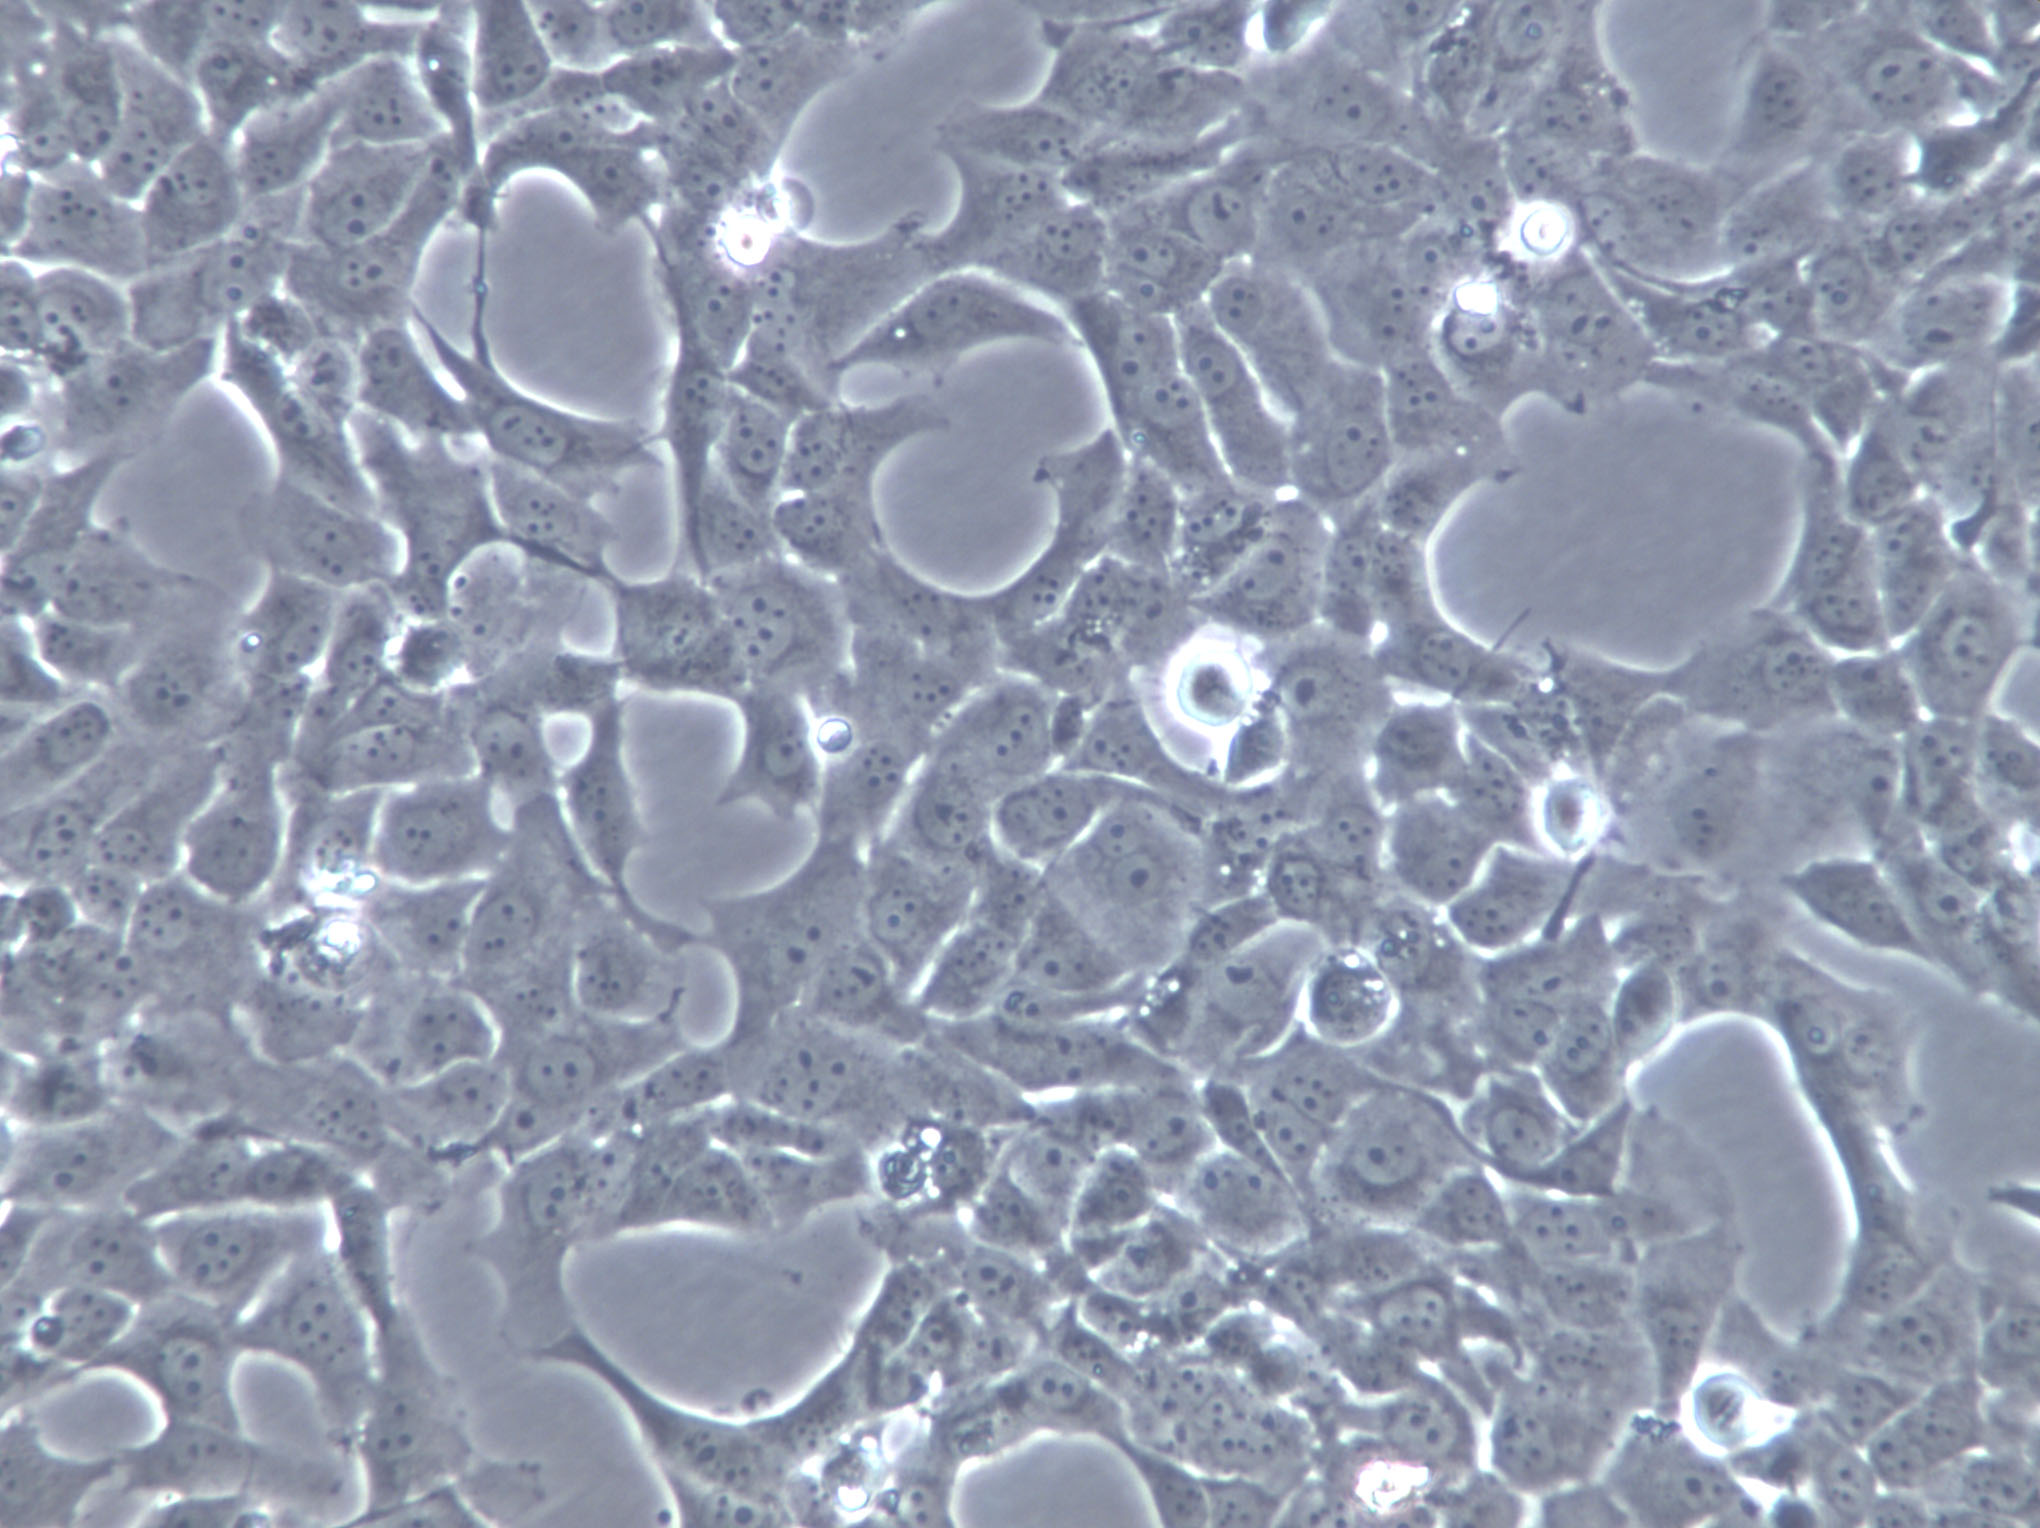 ARO Cells|人未分化甲状腺癌克隆细胞